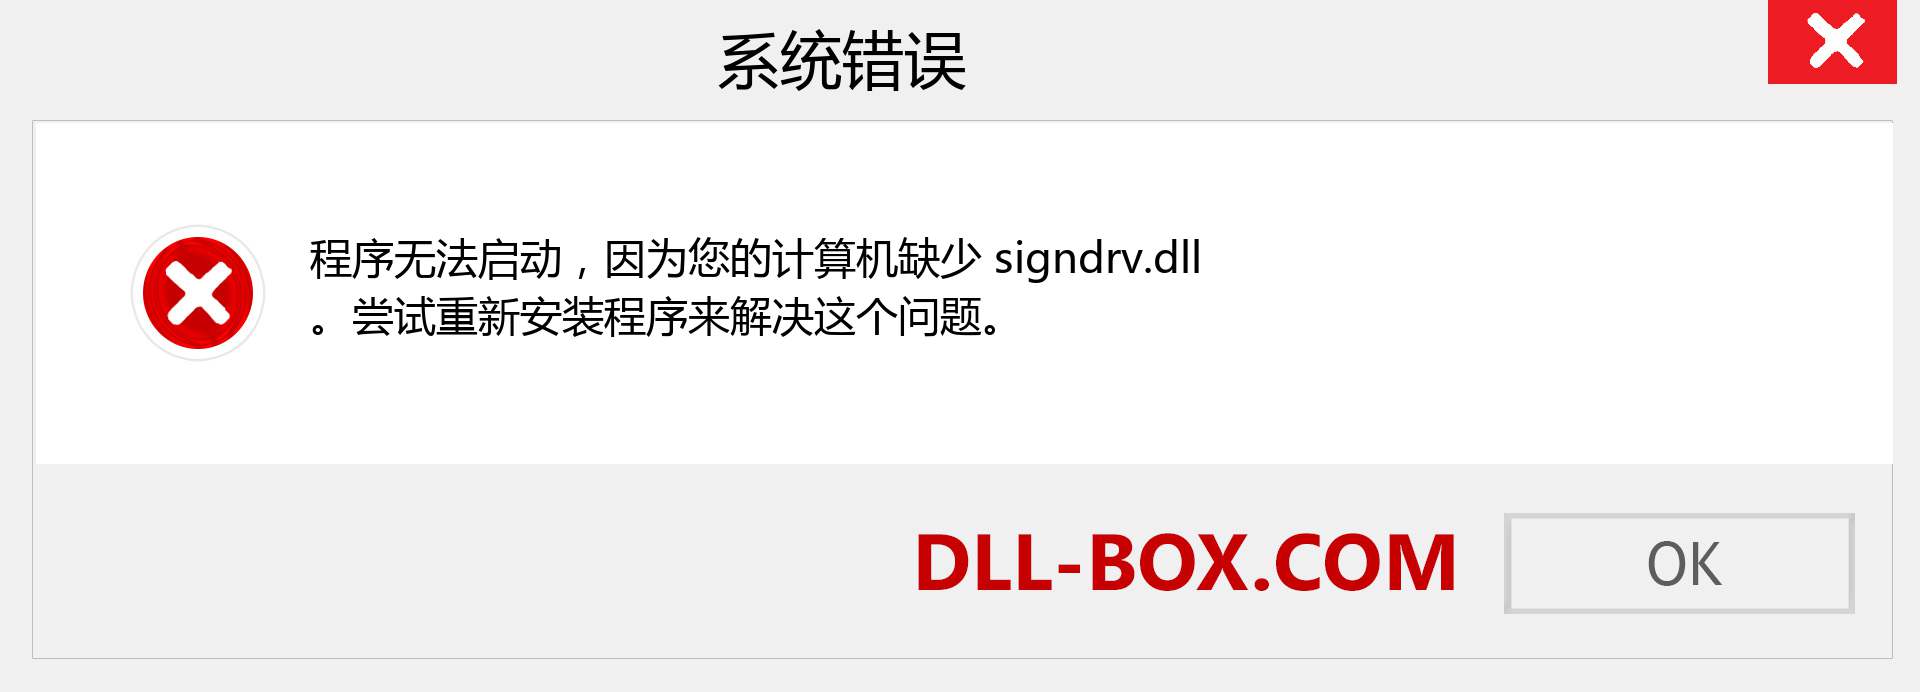 signdrv.dll 文件丢失？。 适用于 Windows 7、8、10 的下载 - 修复 Windows、照片、图像上的 signdrv dll 丢失错误